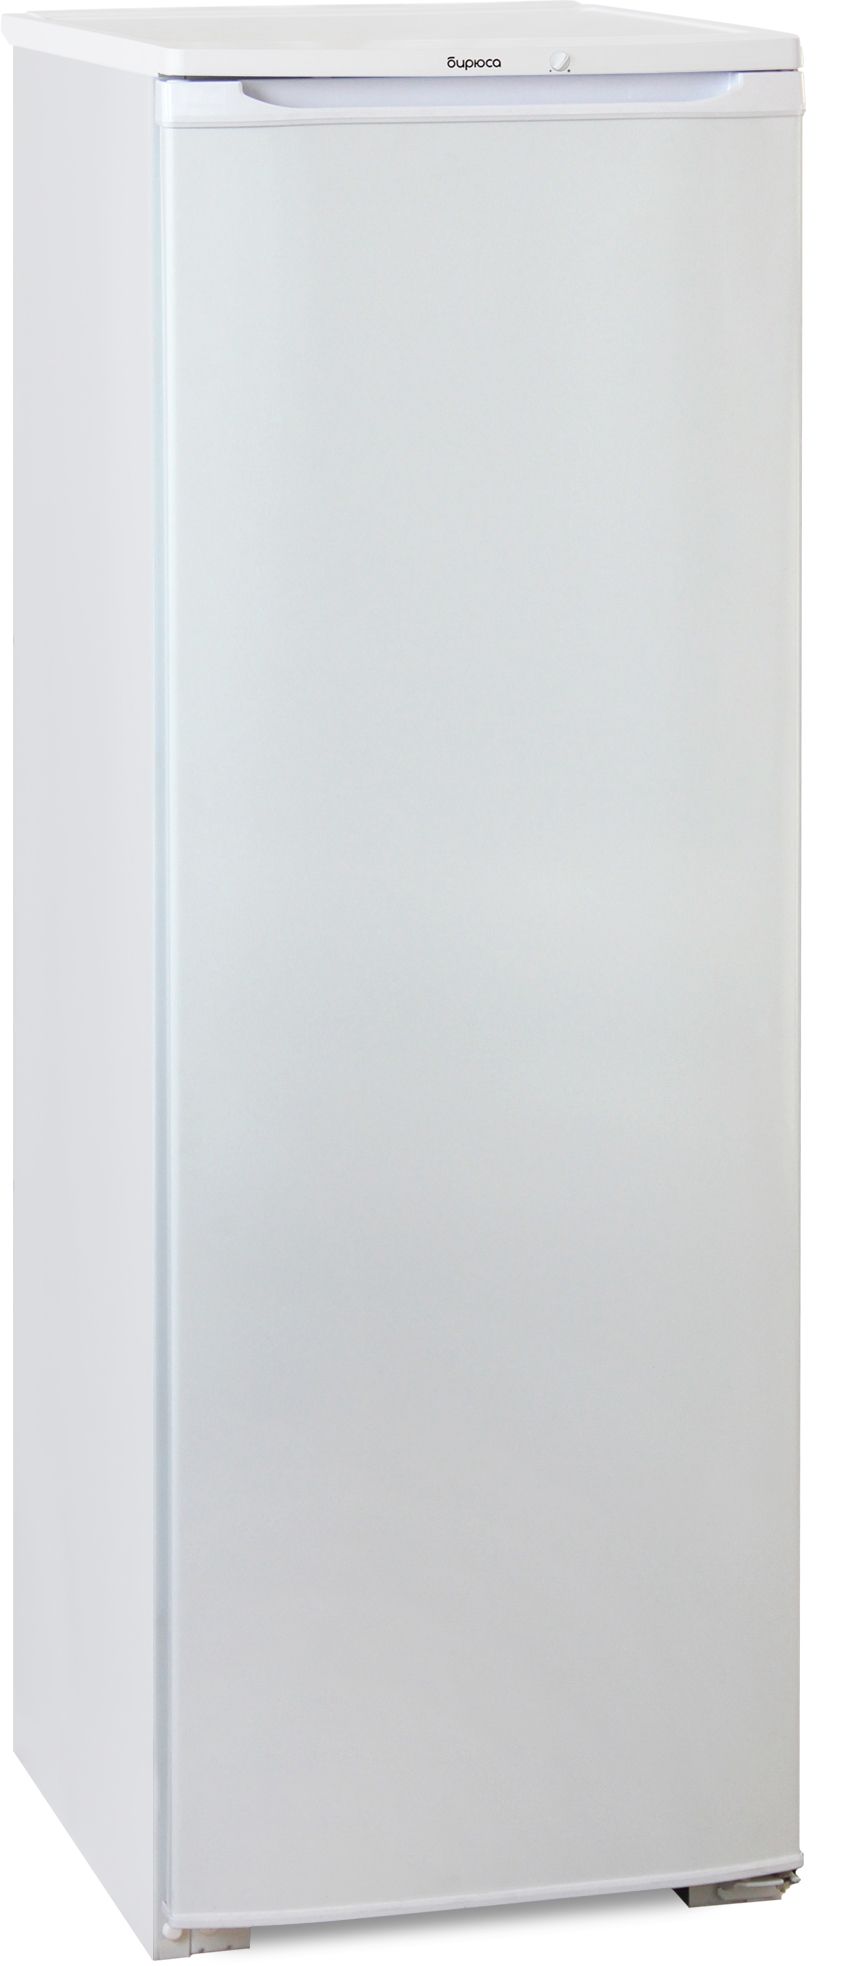 холодильник бирюса 107, купить в Красноярске холодильник бирюса 107,  купить в Красноярске дешево холодильник бирюса 107, купить в Красноярске минимальной цене холодильник бирюса 107